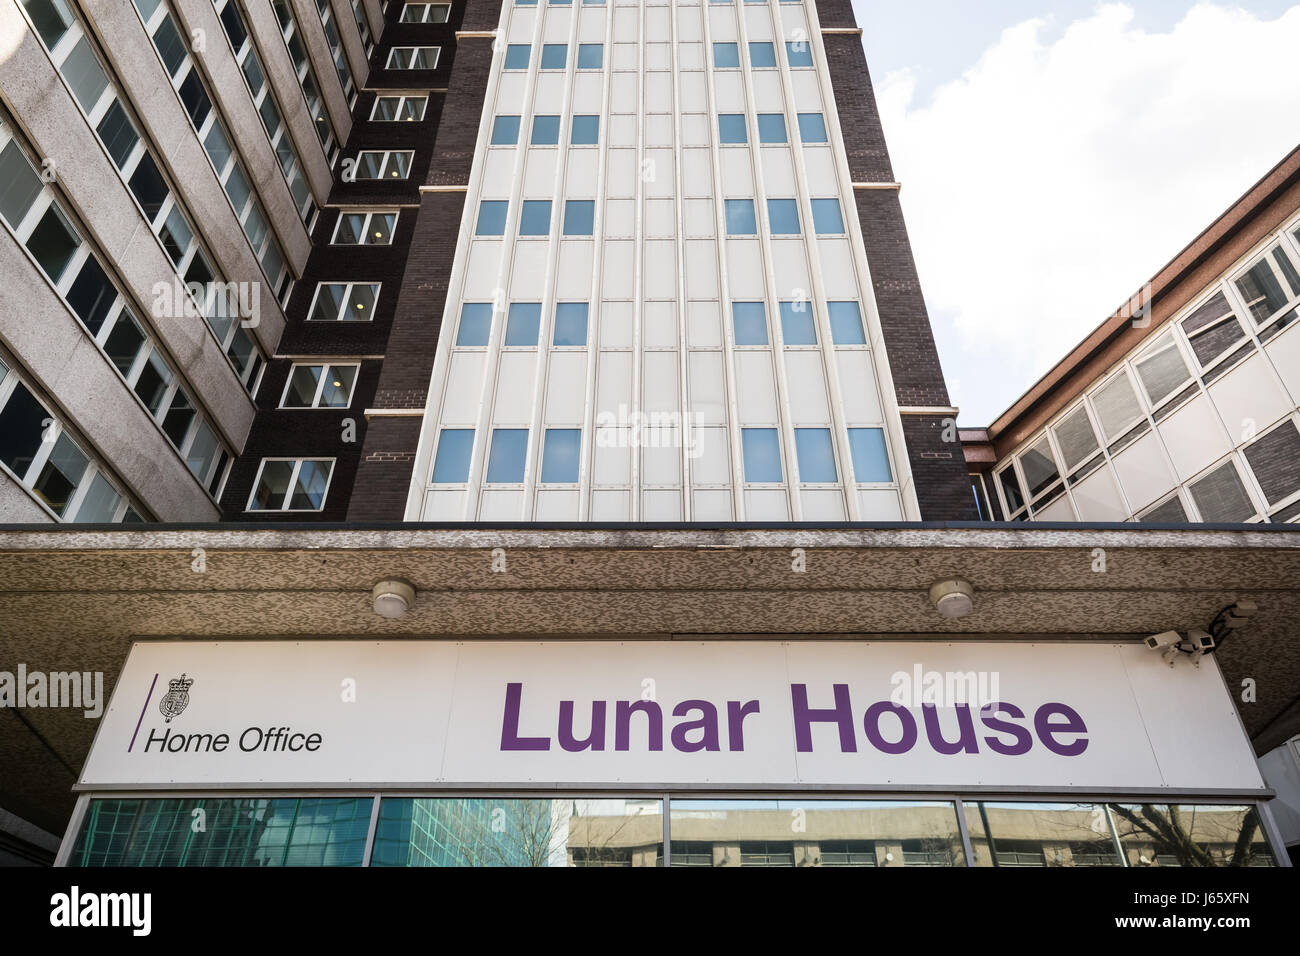 Le Home Office UK Visas et Immigration au bureau maison lunaire à Croydon, London, UK. Banque D'Images